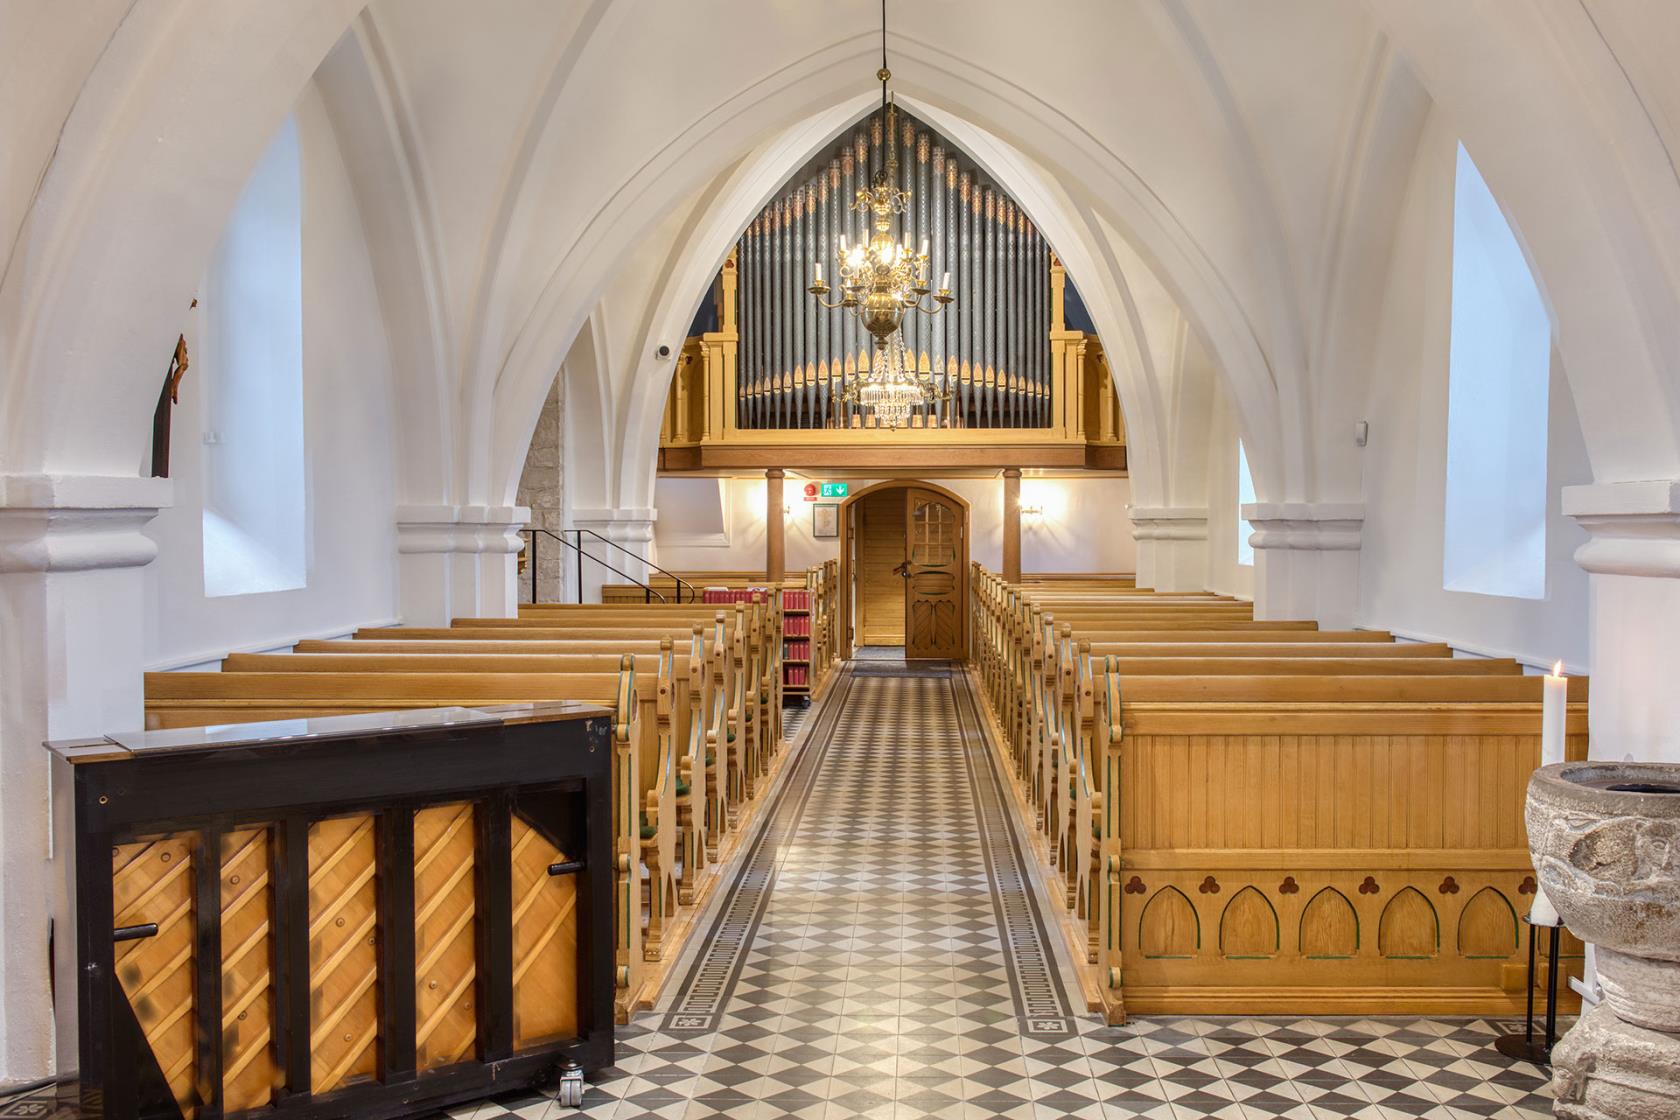 Vitkalkat kyrkorum med ljus bänkinredning i trä, orgelläktare och dopfunt i sandsten.